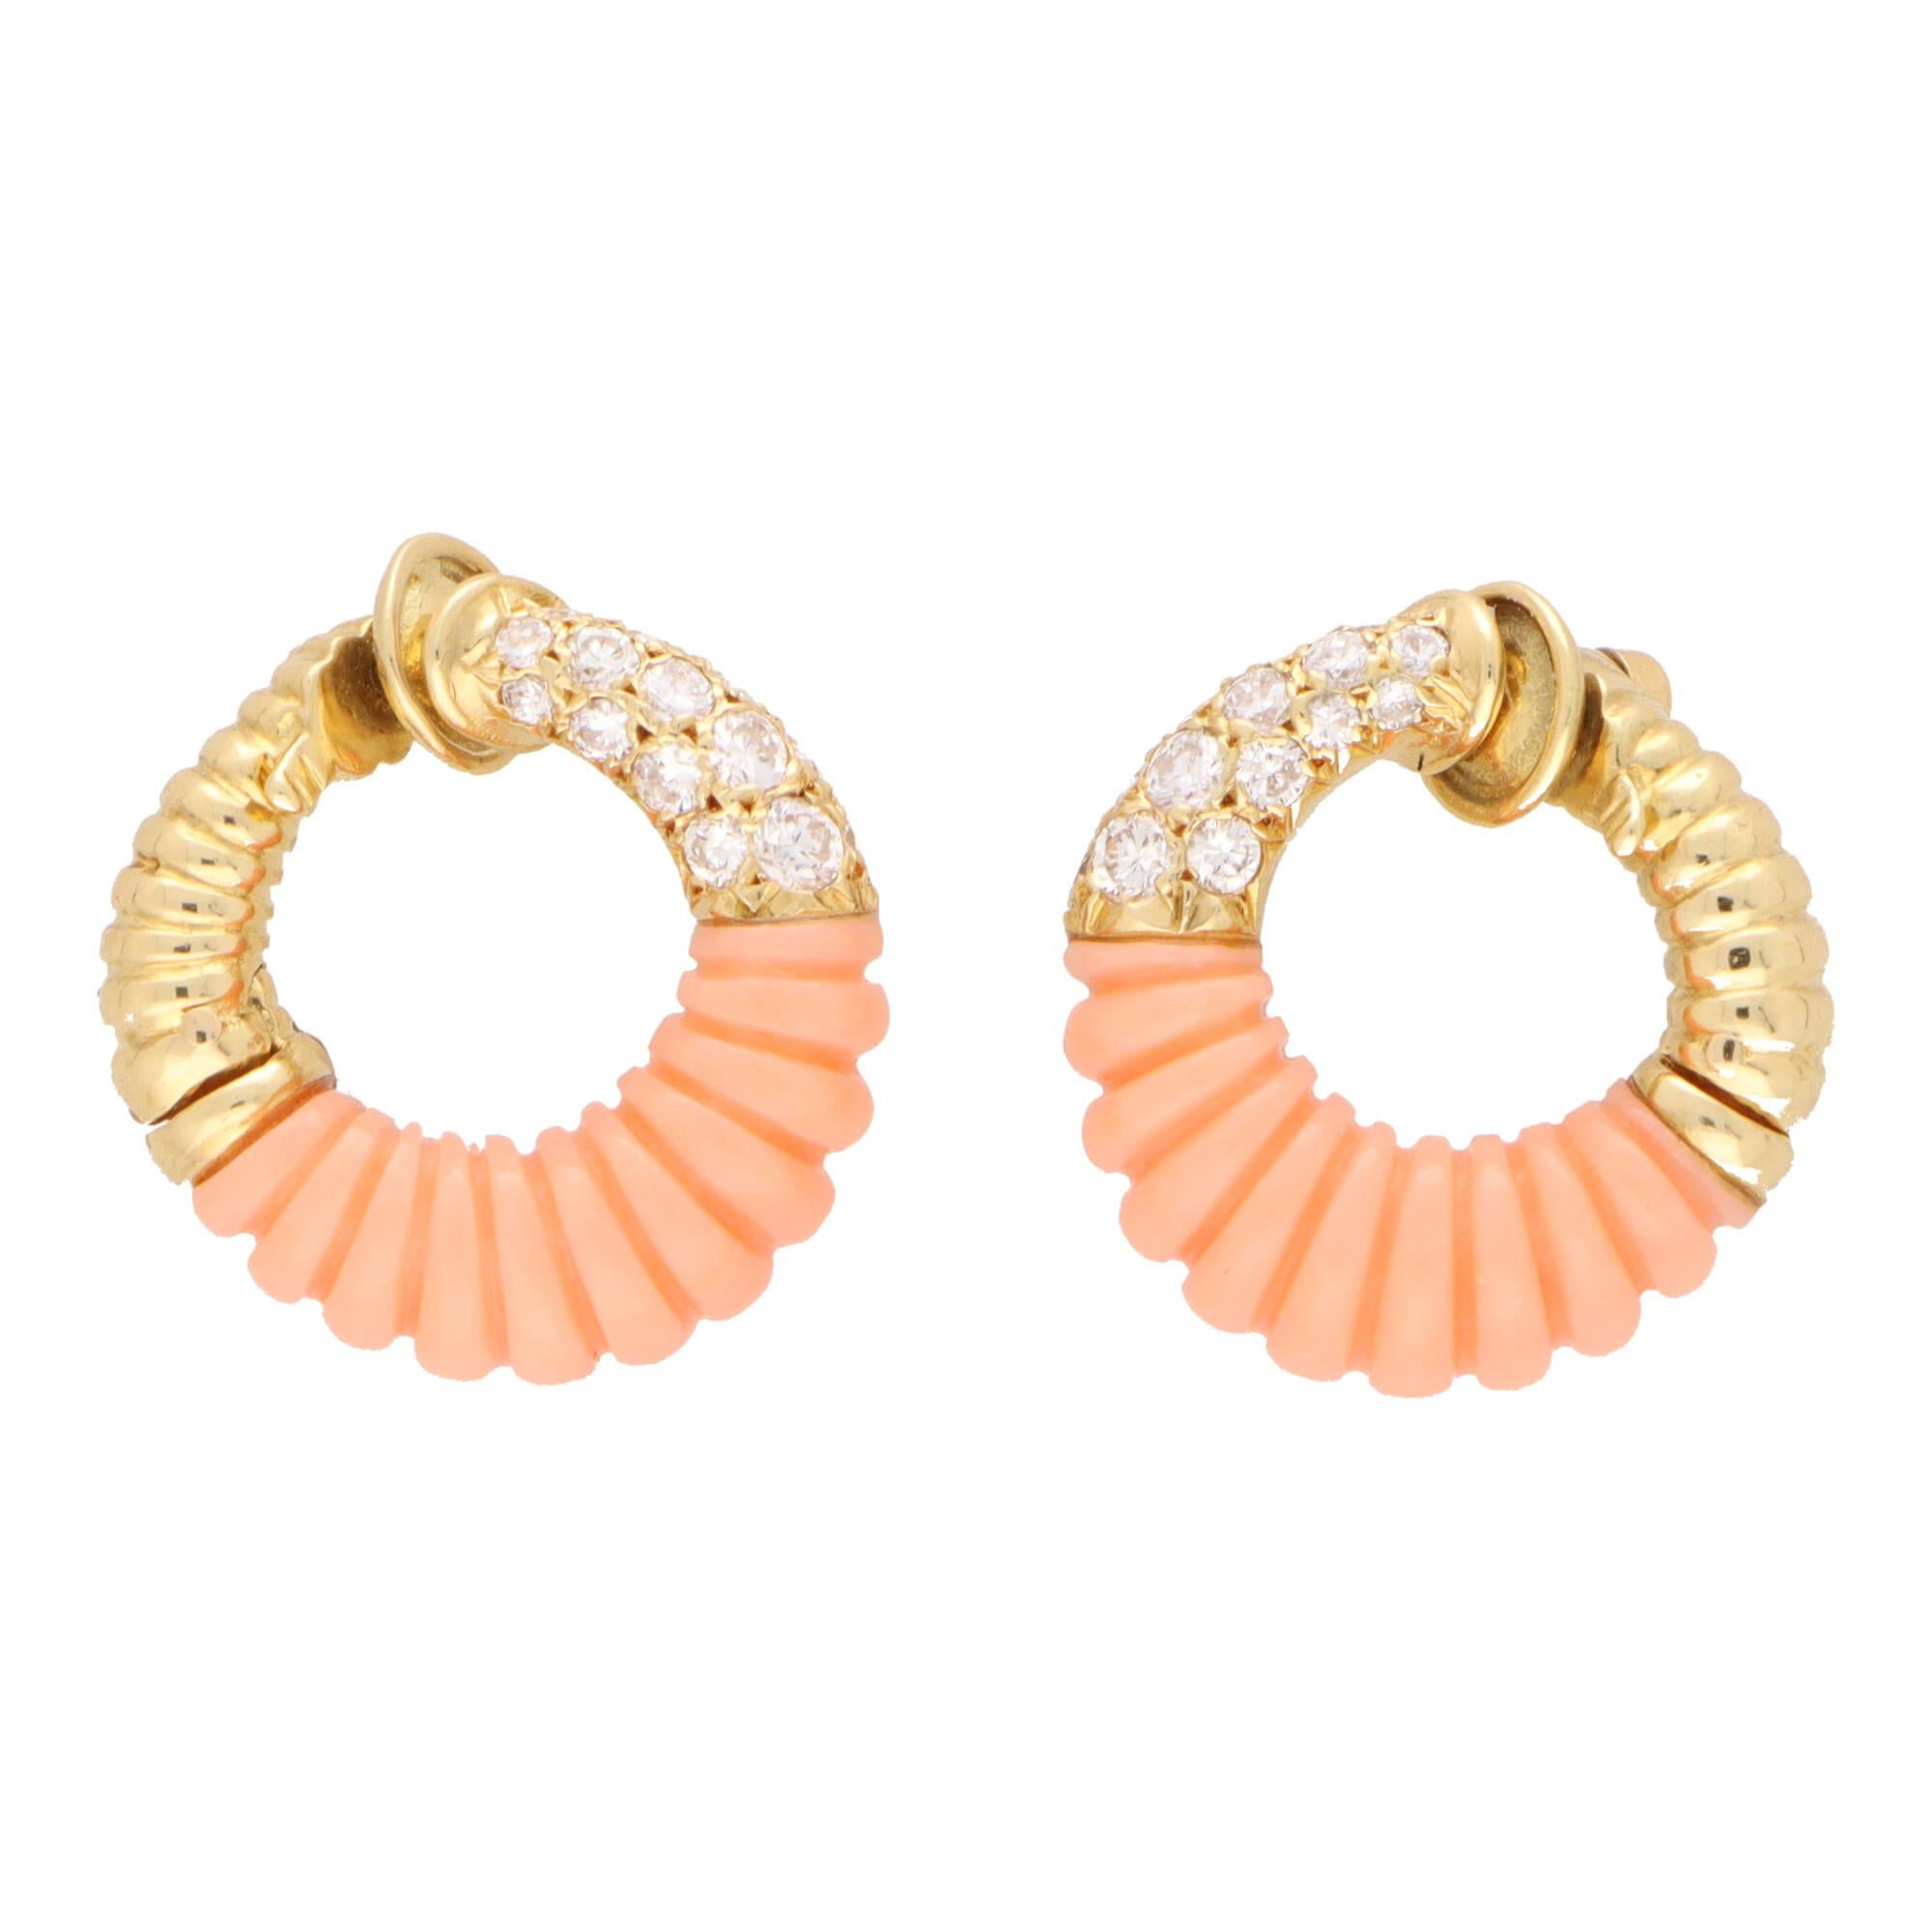 Ein sehr einzigartiges Paar Van Cleef & Arpels Korallen und Diamanten Clip auf Reifen Ohrringe in 18k Gelbgold.

Diese schönen Reifchen sind in einem abgestuften, kreisförmigen Motiv zusammengesetzt und in der Mitte mit einem geschnitzten